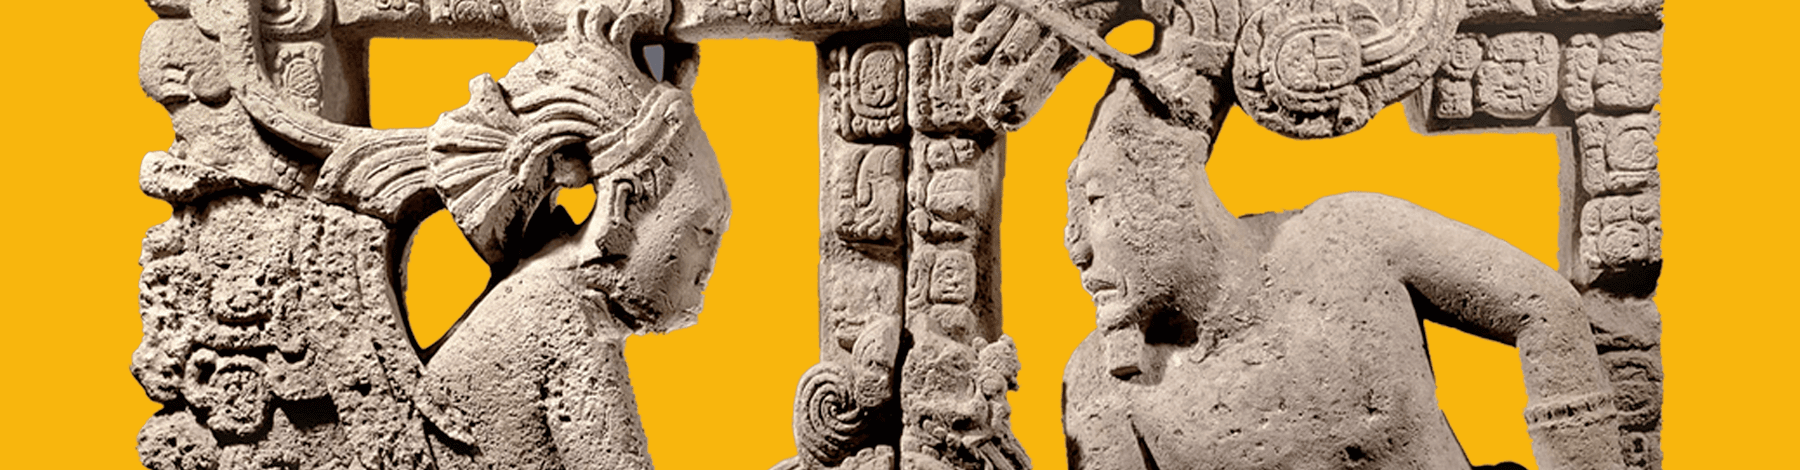 Observa y aprende | Cuadernillo: Logogramas mayas | Museo Amparo, Puebla | Museo Amparo, Puebla.